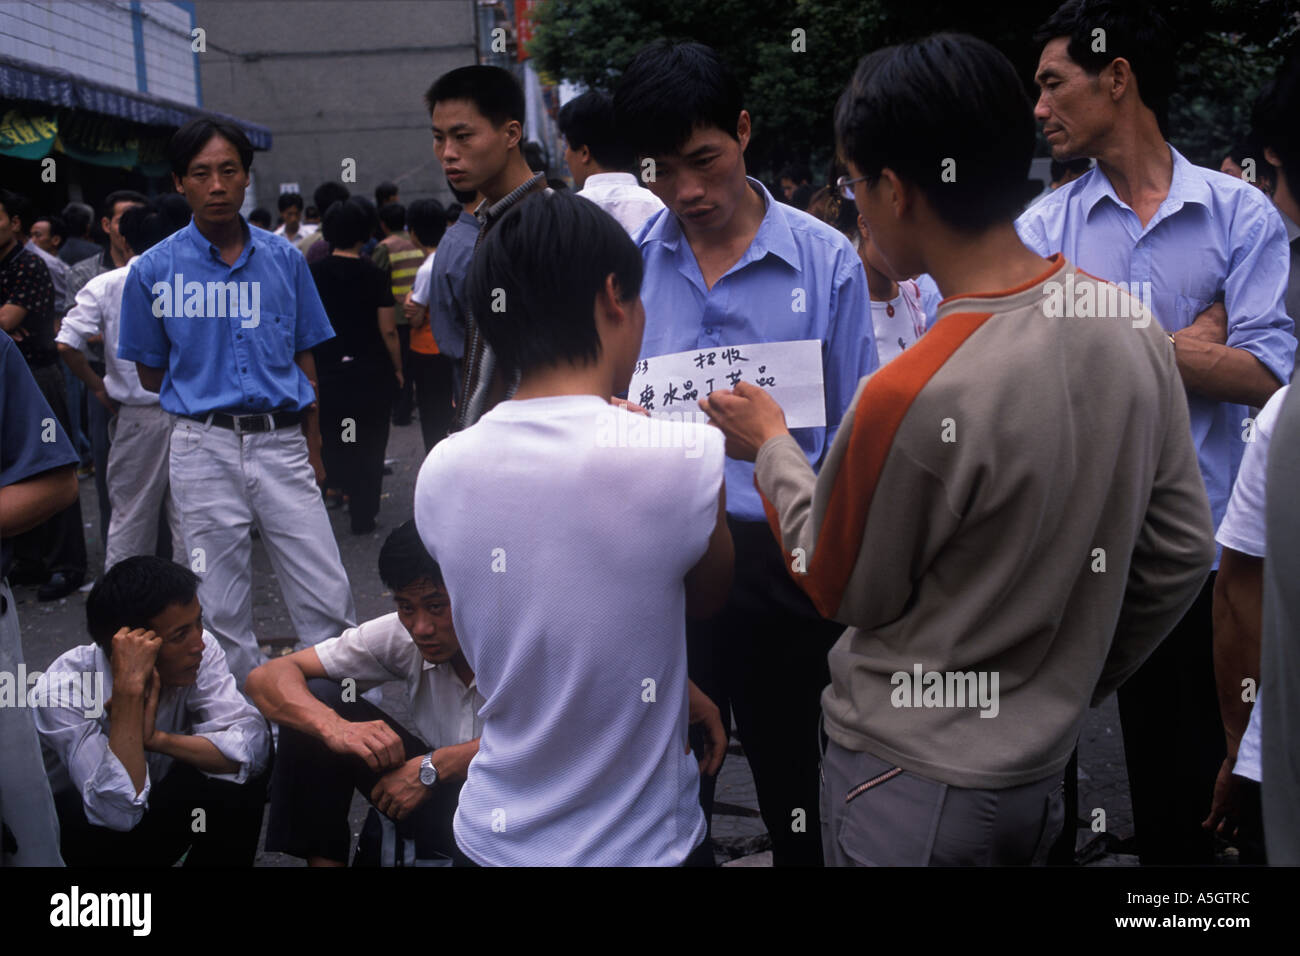 Cina 2000S.. Uomini dell'economia cinese lavoratori disoccupati, pubblicizzano le loro abilità al mercato del lavoro Yiwu provincia di Zhejiang 2001 HOMER SYKES Foto Stock